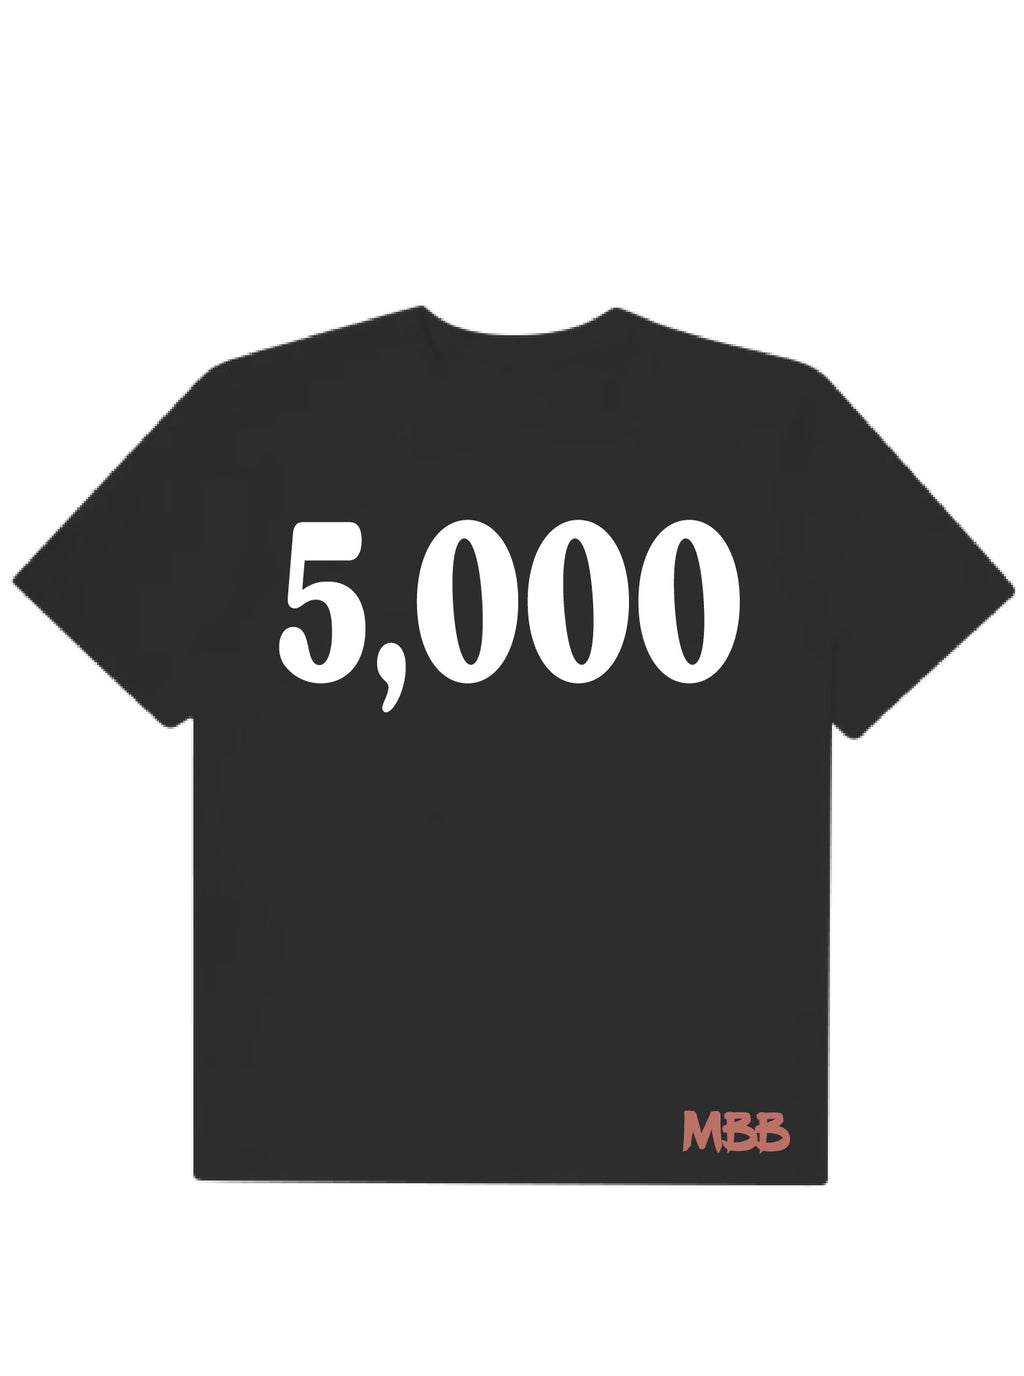 “5,000 This Isn’t A Shirt It’s ART” T-Shirt